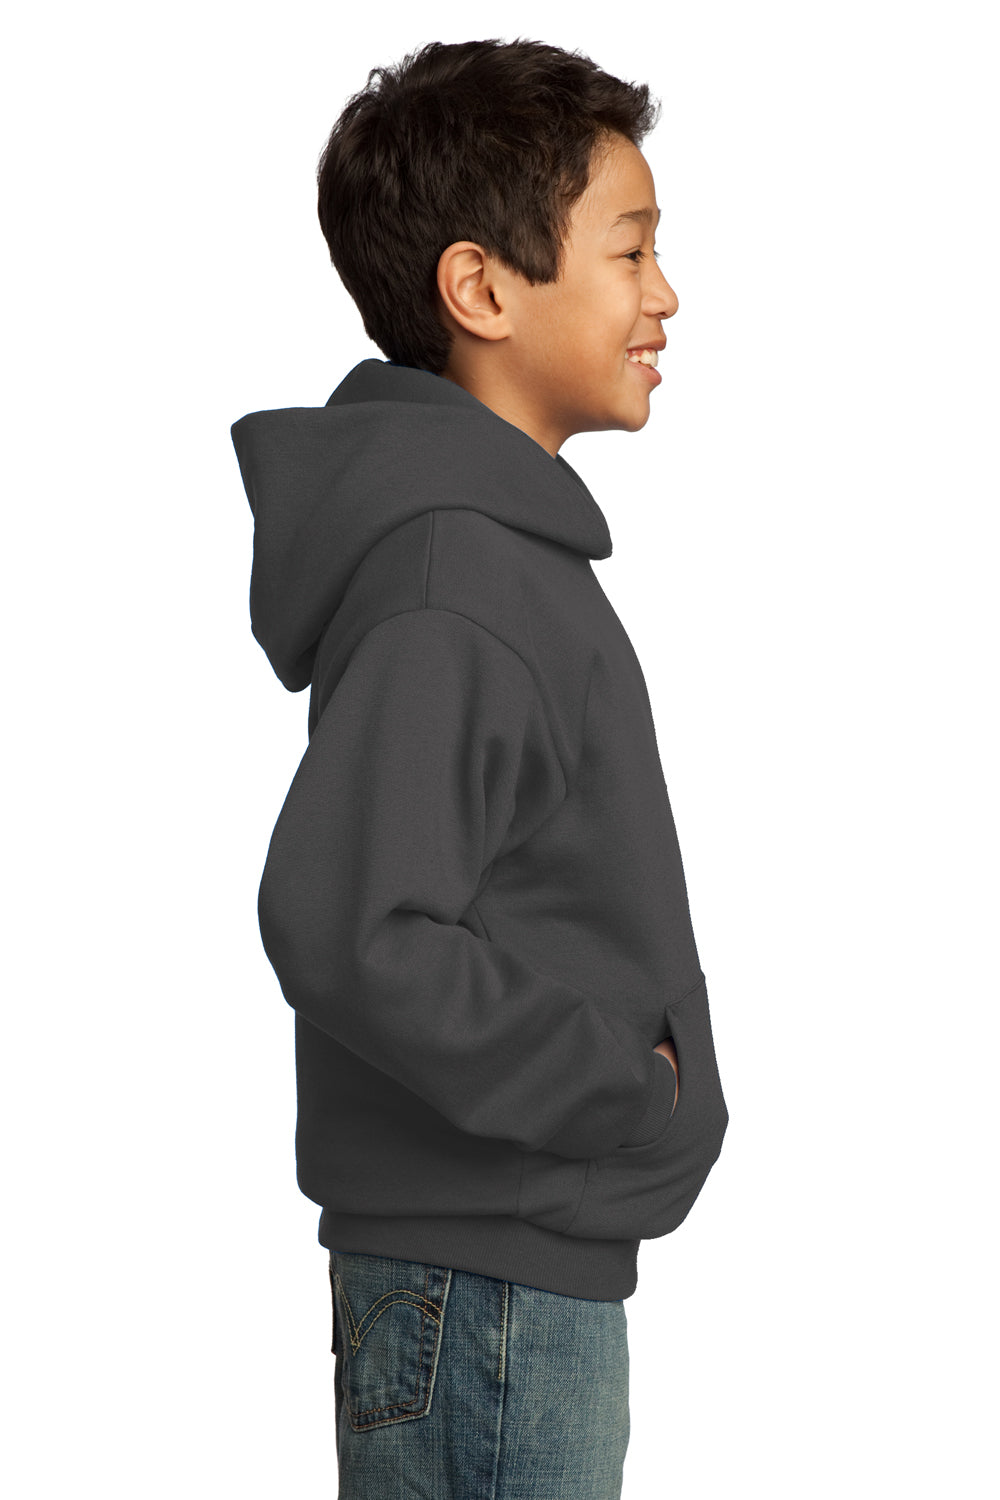 Port & Company PC90YH Youth Core Fleece Hooded Sweatshirt Hoodie Charcoal Grey Side